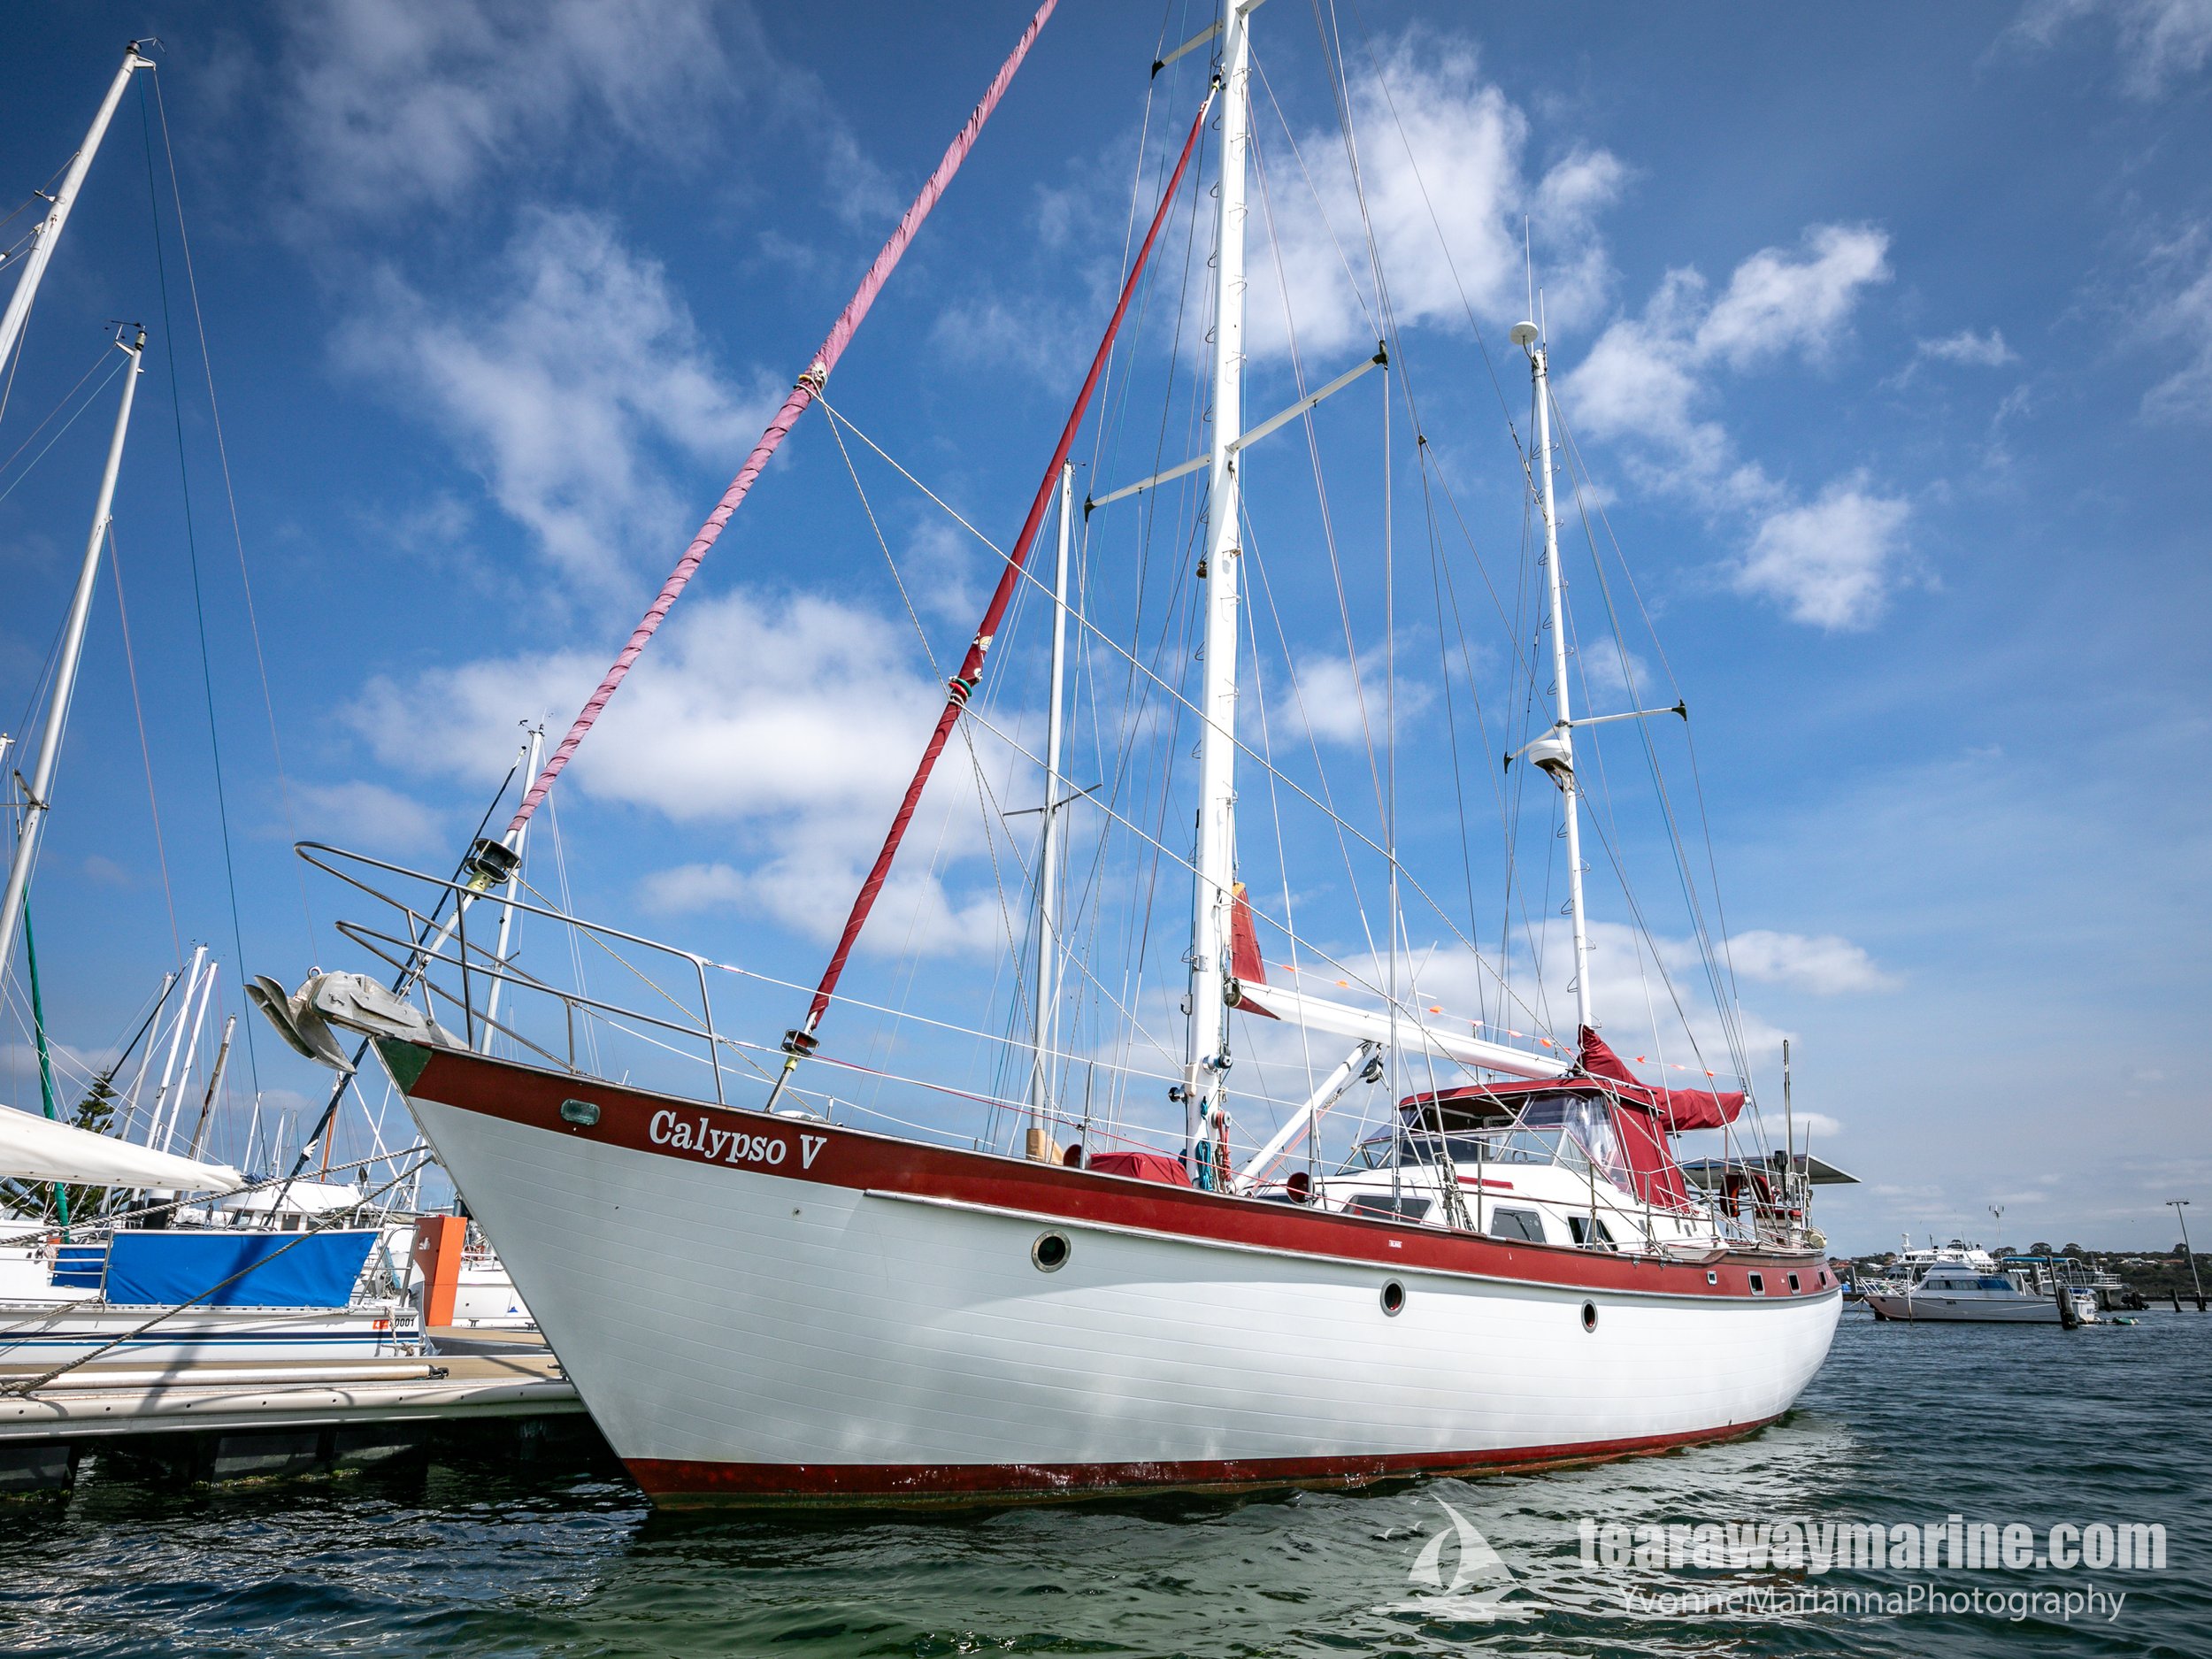 Calypso Yacht Tearaway Marine - Yvonne Marianna Photography-34.jpg